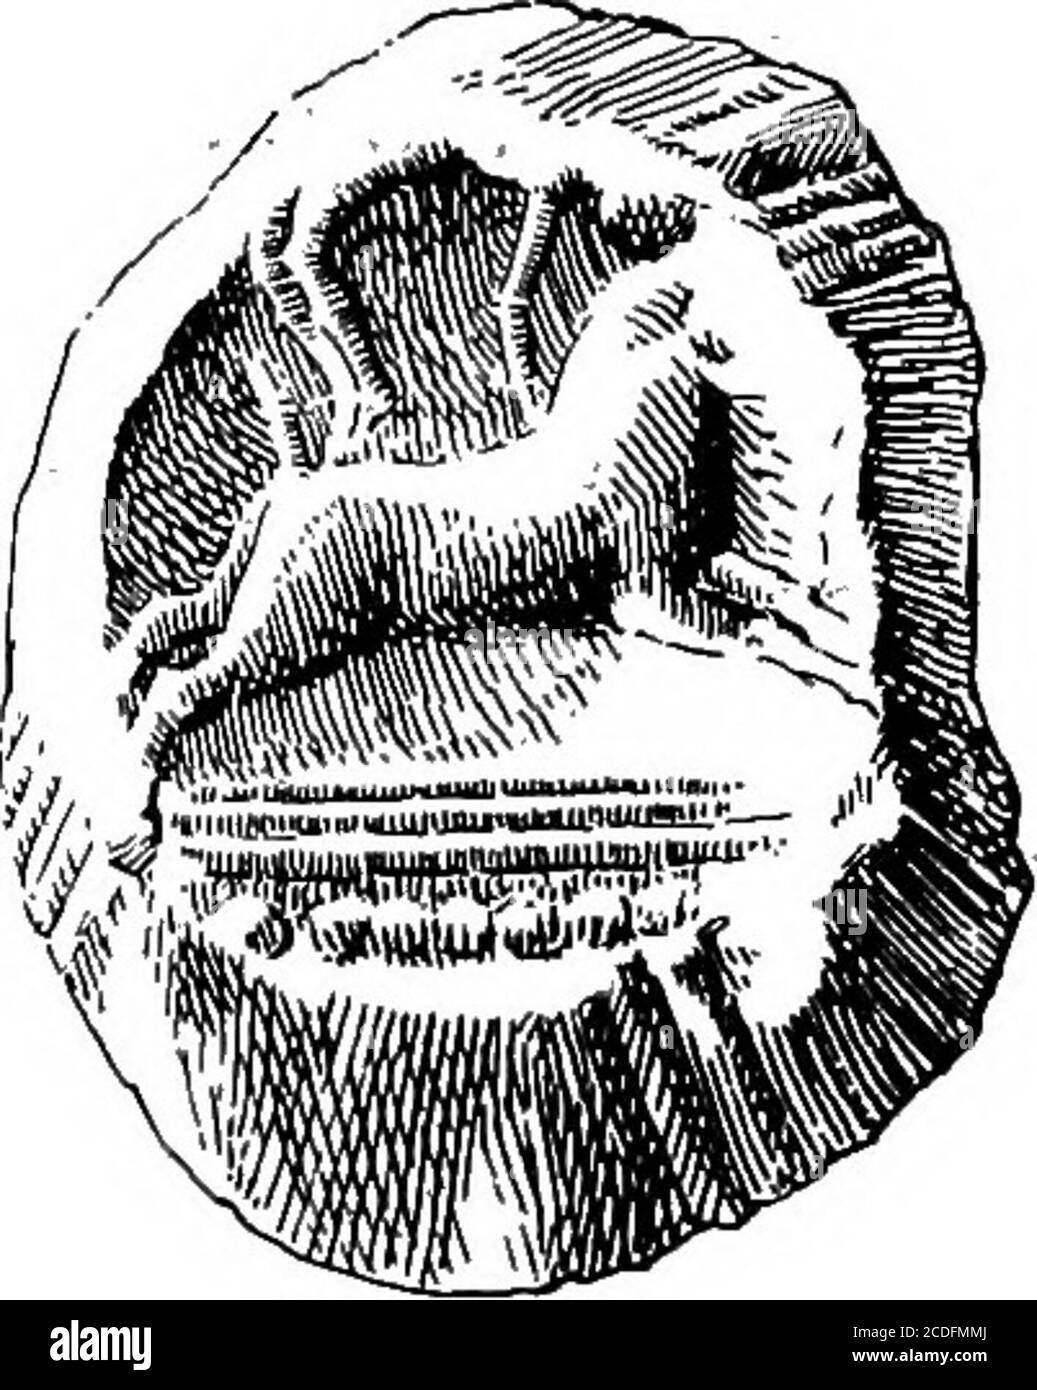 . Der Palast von Minos : Ein vergleichender Bericht über die aufeinanderfolgenden Stadien der frühen kretischen Zivilisation, wie durch die Entdeckungen in Knossos illustriert wird. E Umfang von denen intotzwei Prozessionsreihen von gehörnten Schafen geteilt wird.^ 1 die Form des Steins (einmal in meinen Posses- im Hort, einschließlich der in Fig. 411,Sion) ähnelt der Abbildung in Abb. 493, a, oben, a, b, oben. Präsentiert eine konventionelle Fafade. Diese Art von = Lolling, Bas Kuppelgrab von Menidi,lentoid geht, wie wir gesehen haben, auf M. M. II. Zurück PL VIII; Parrot Hisioirc, vj, La Grecepnnn- mehrere Fragmente solcher Arten waren Stockfoto